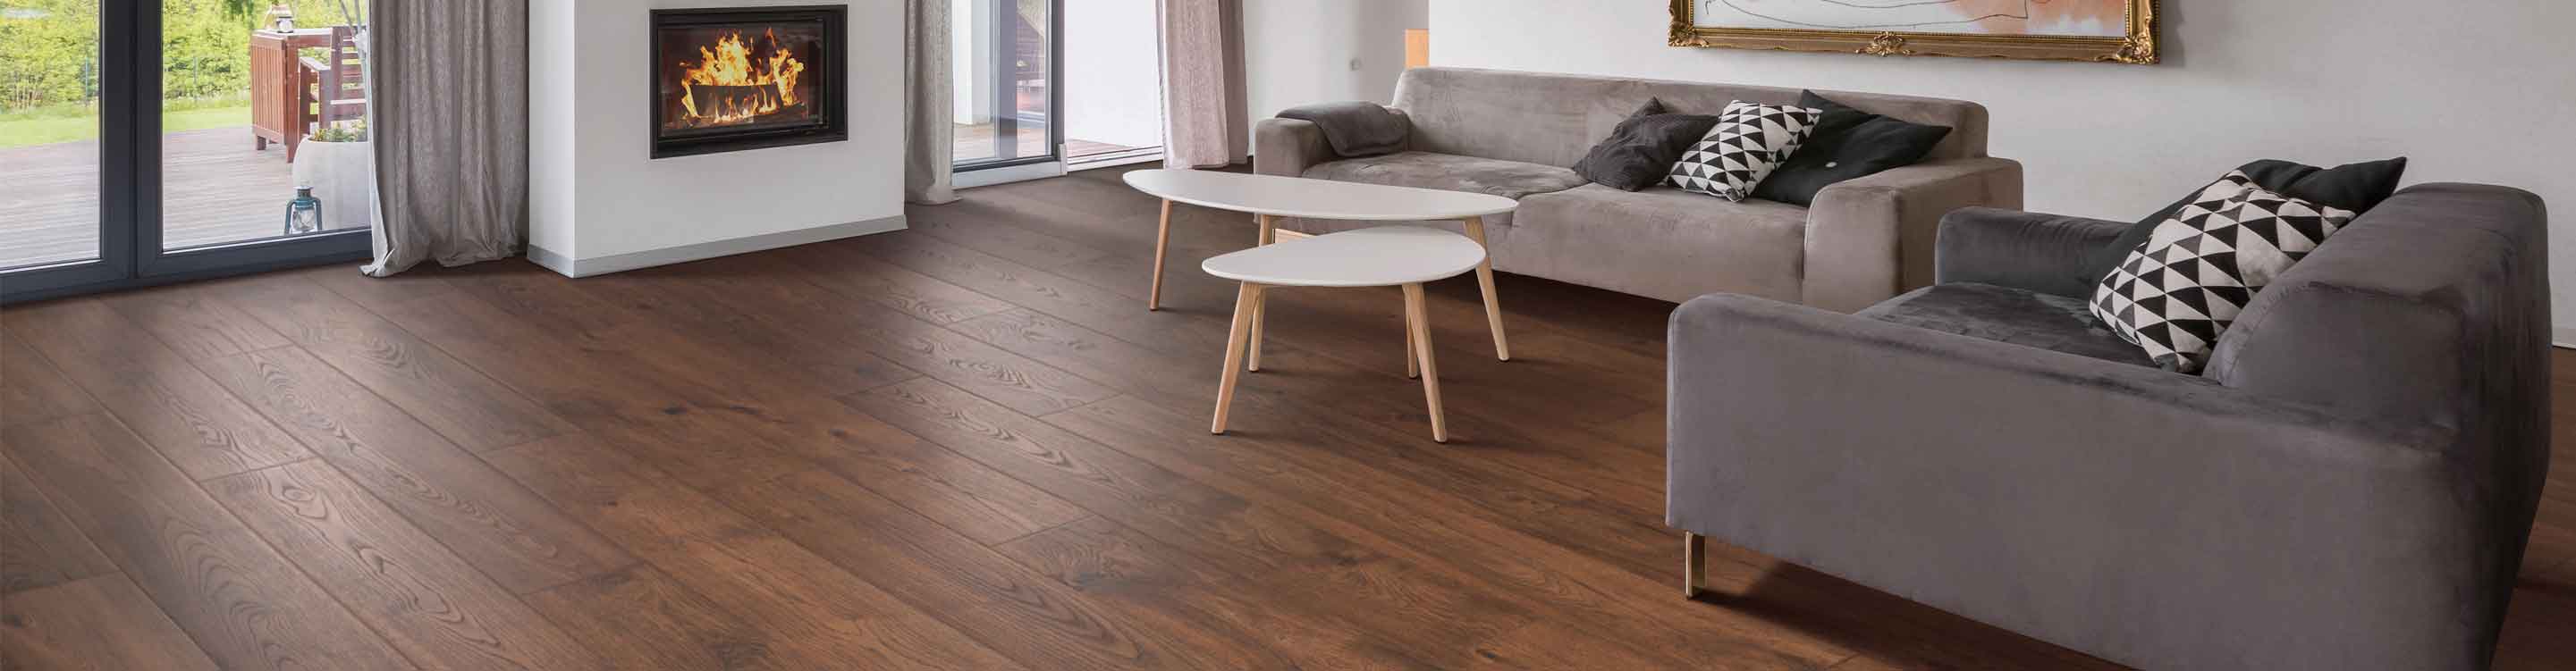 wood look laminate flooring in living room